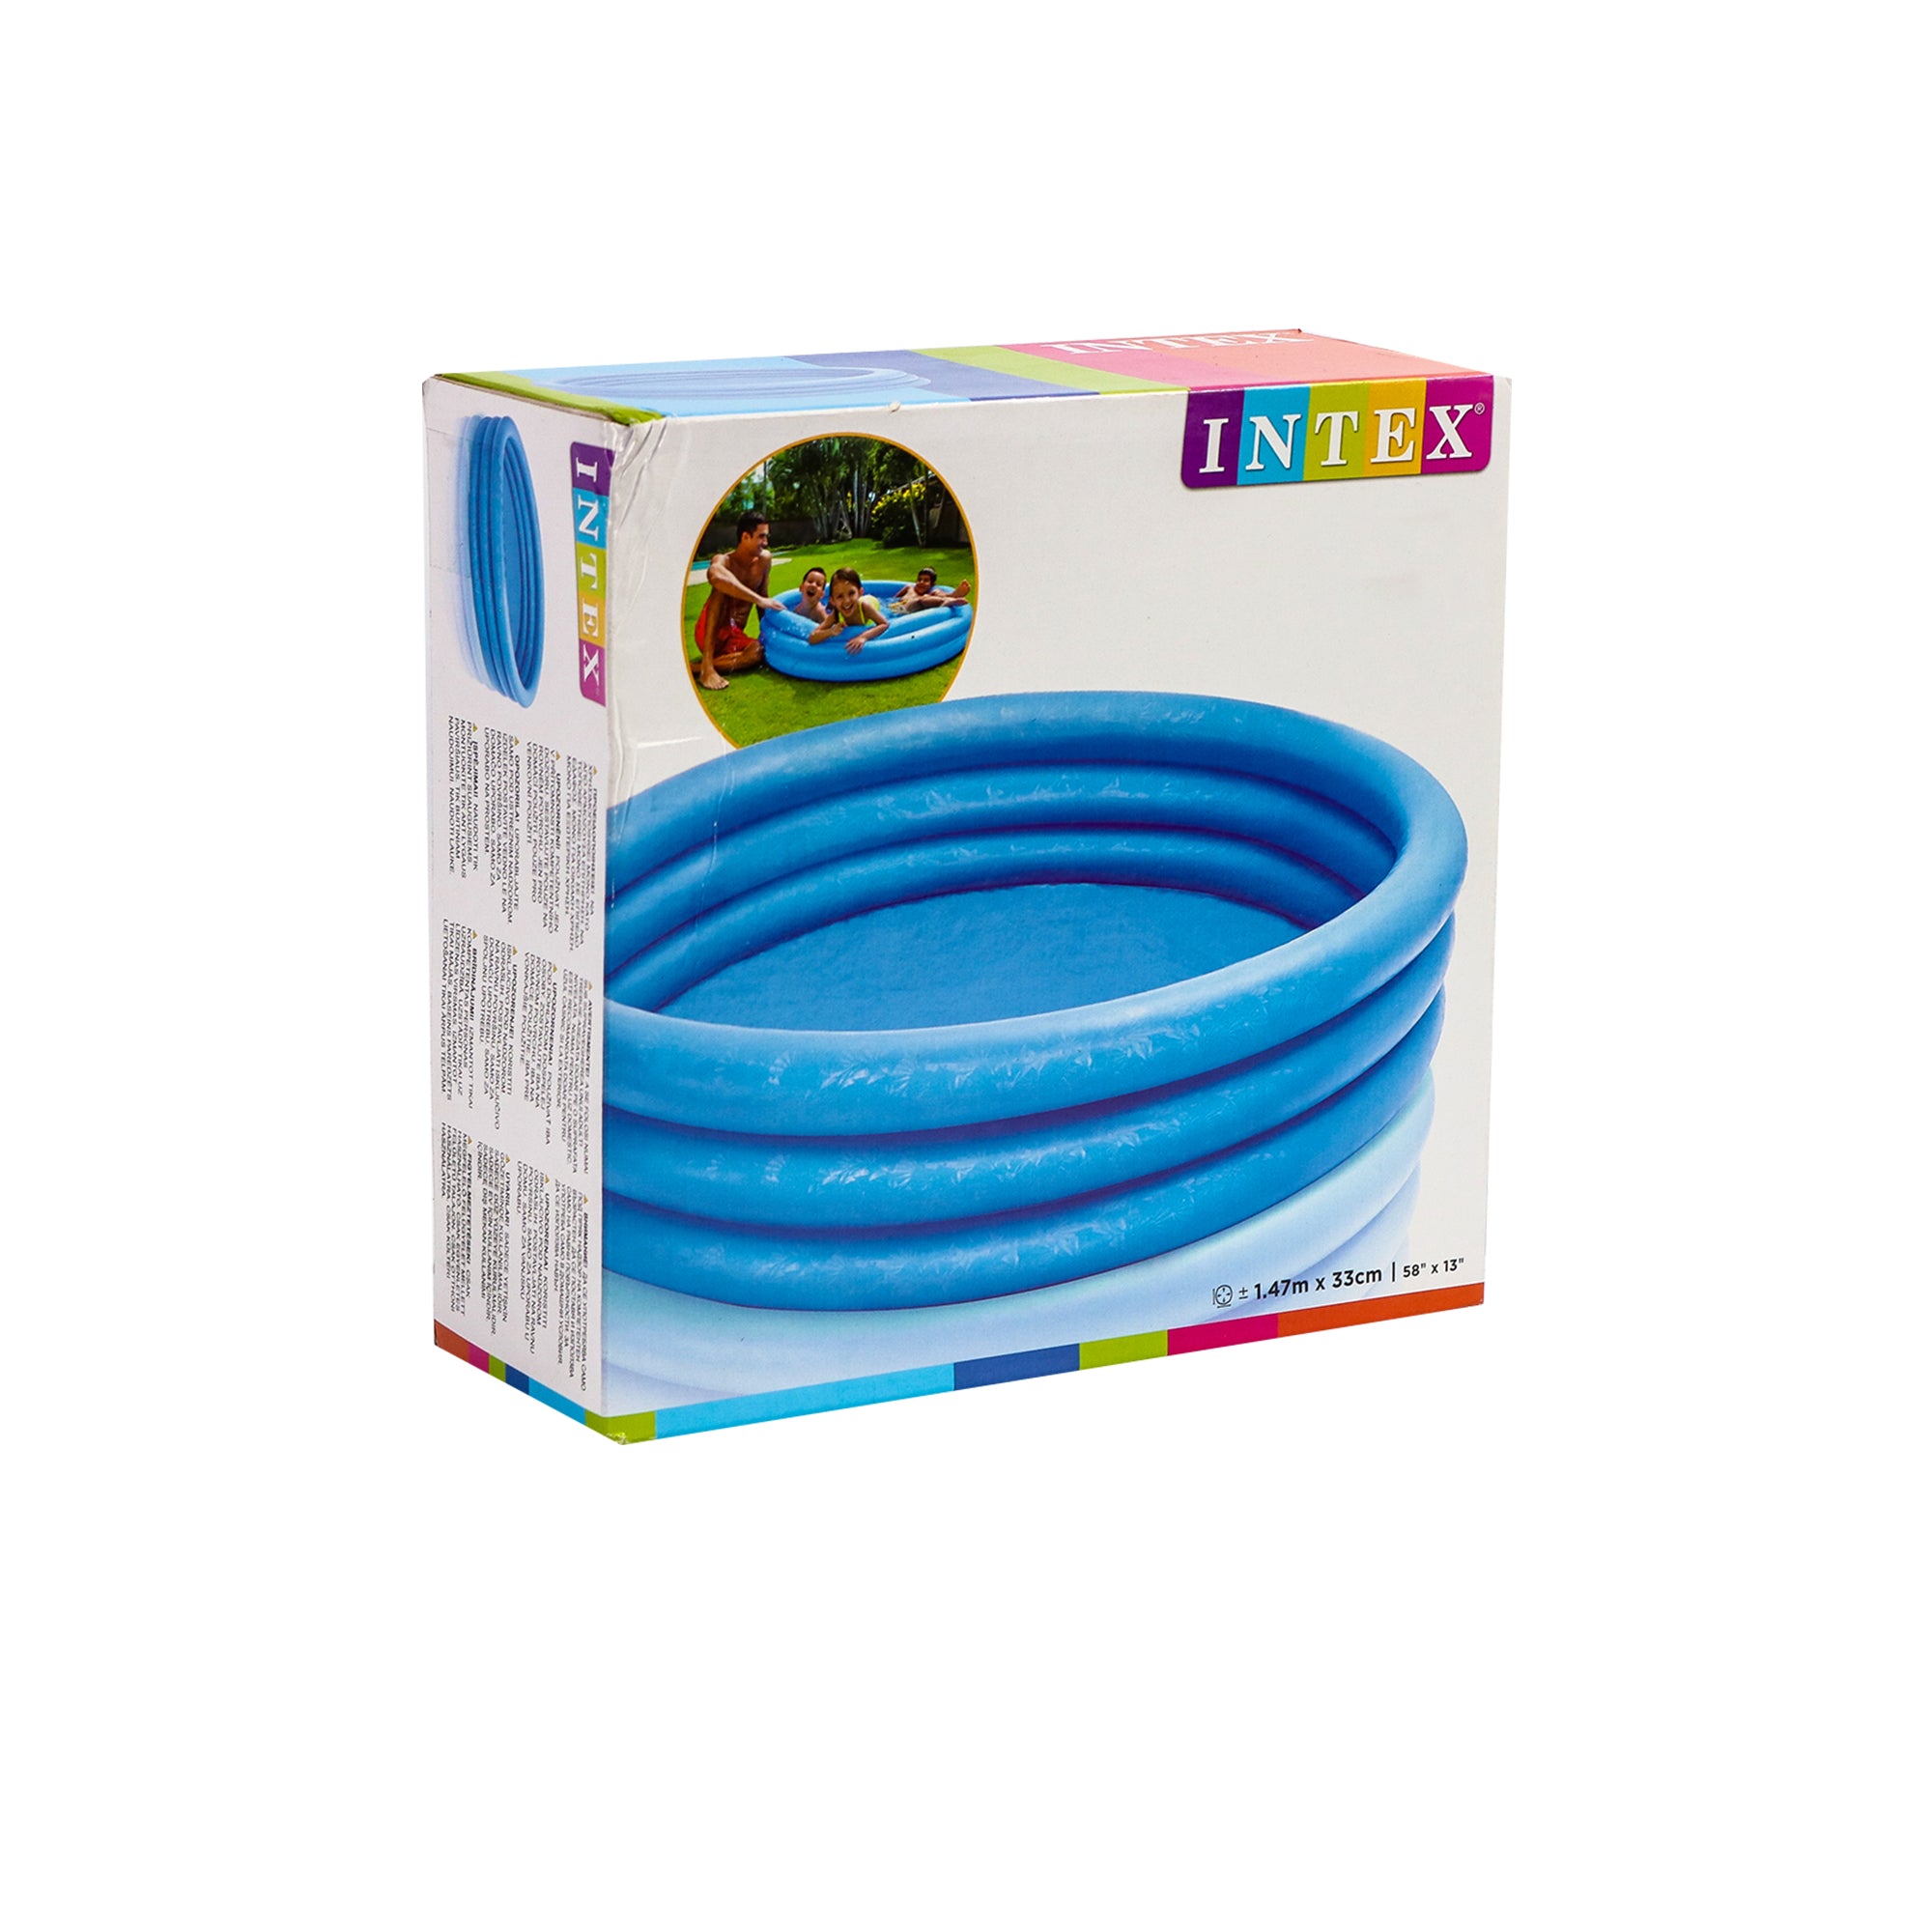 Intex Pool Crystal Blue 147x33cm